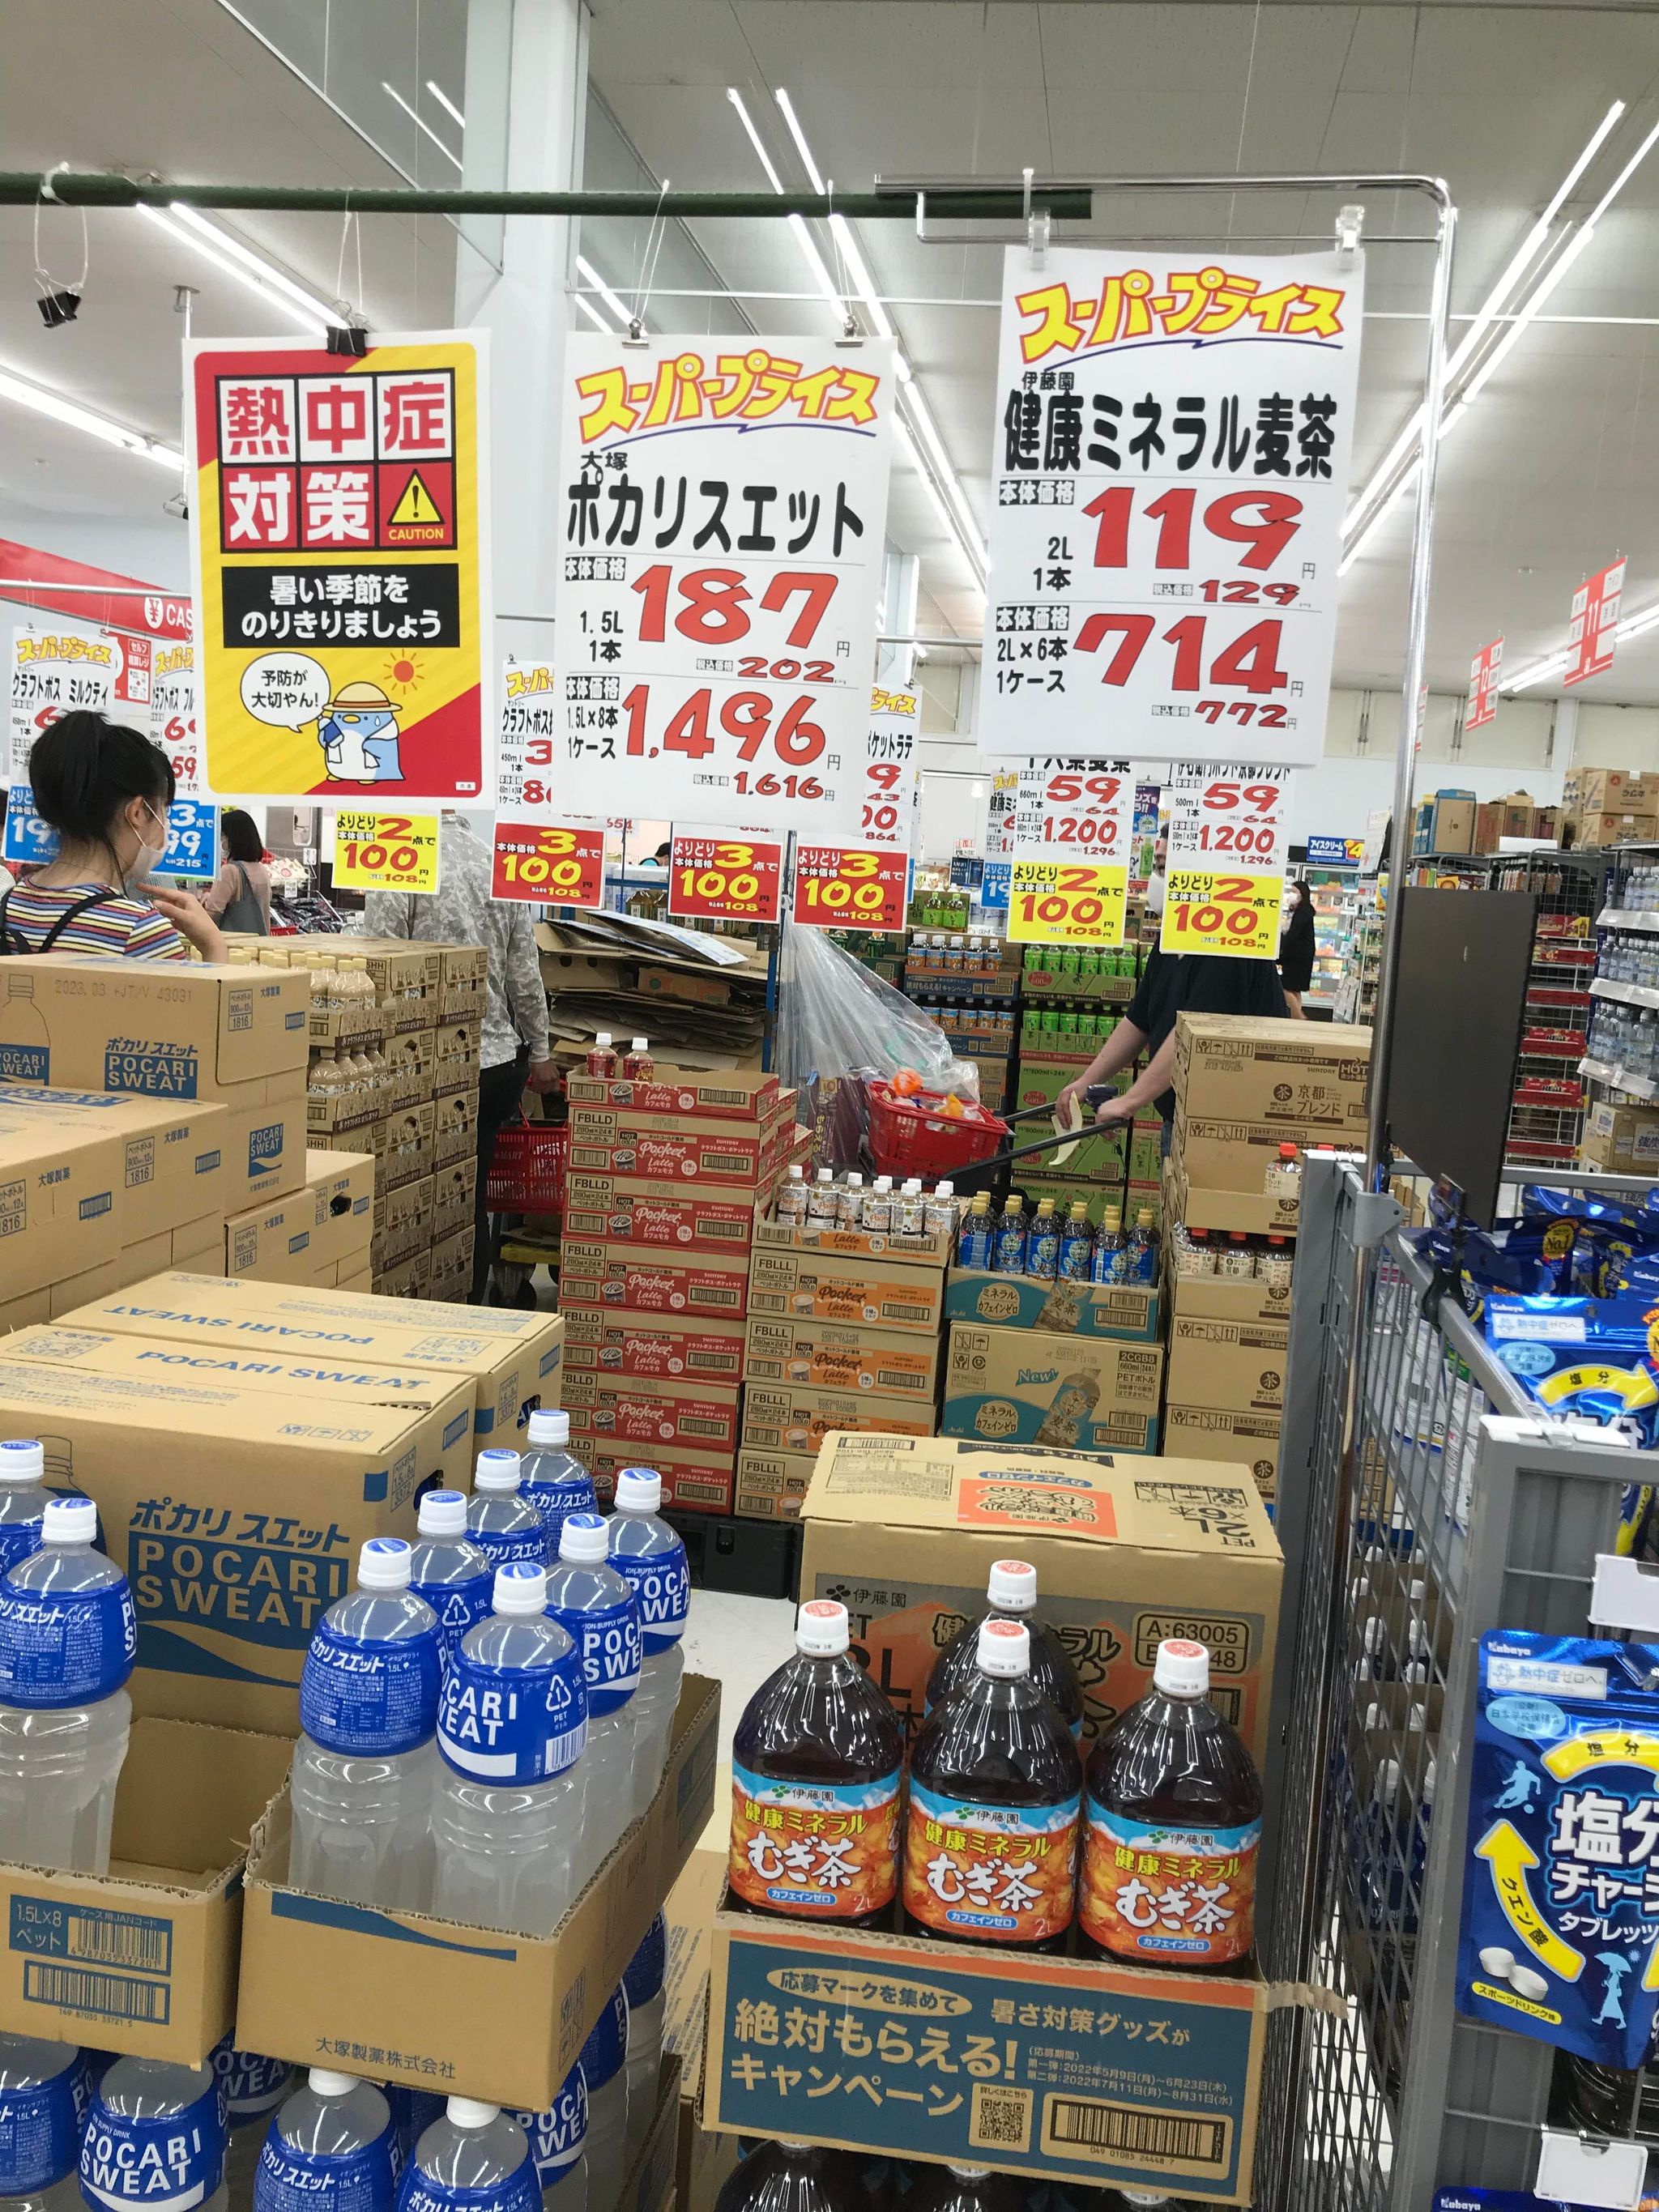 Các sản phẩm bày bán trong siêu thị tại Nhật Bản, nơi chị Thanh Huyền sinh sống. Ảnh: NVCC.